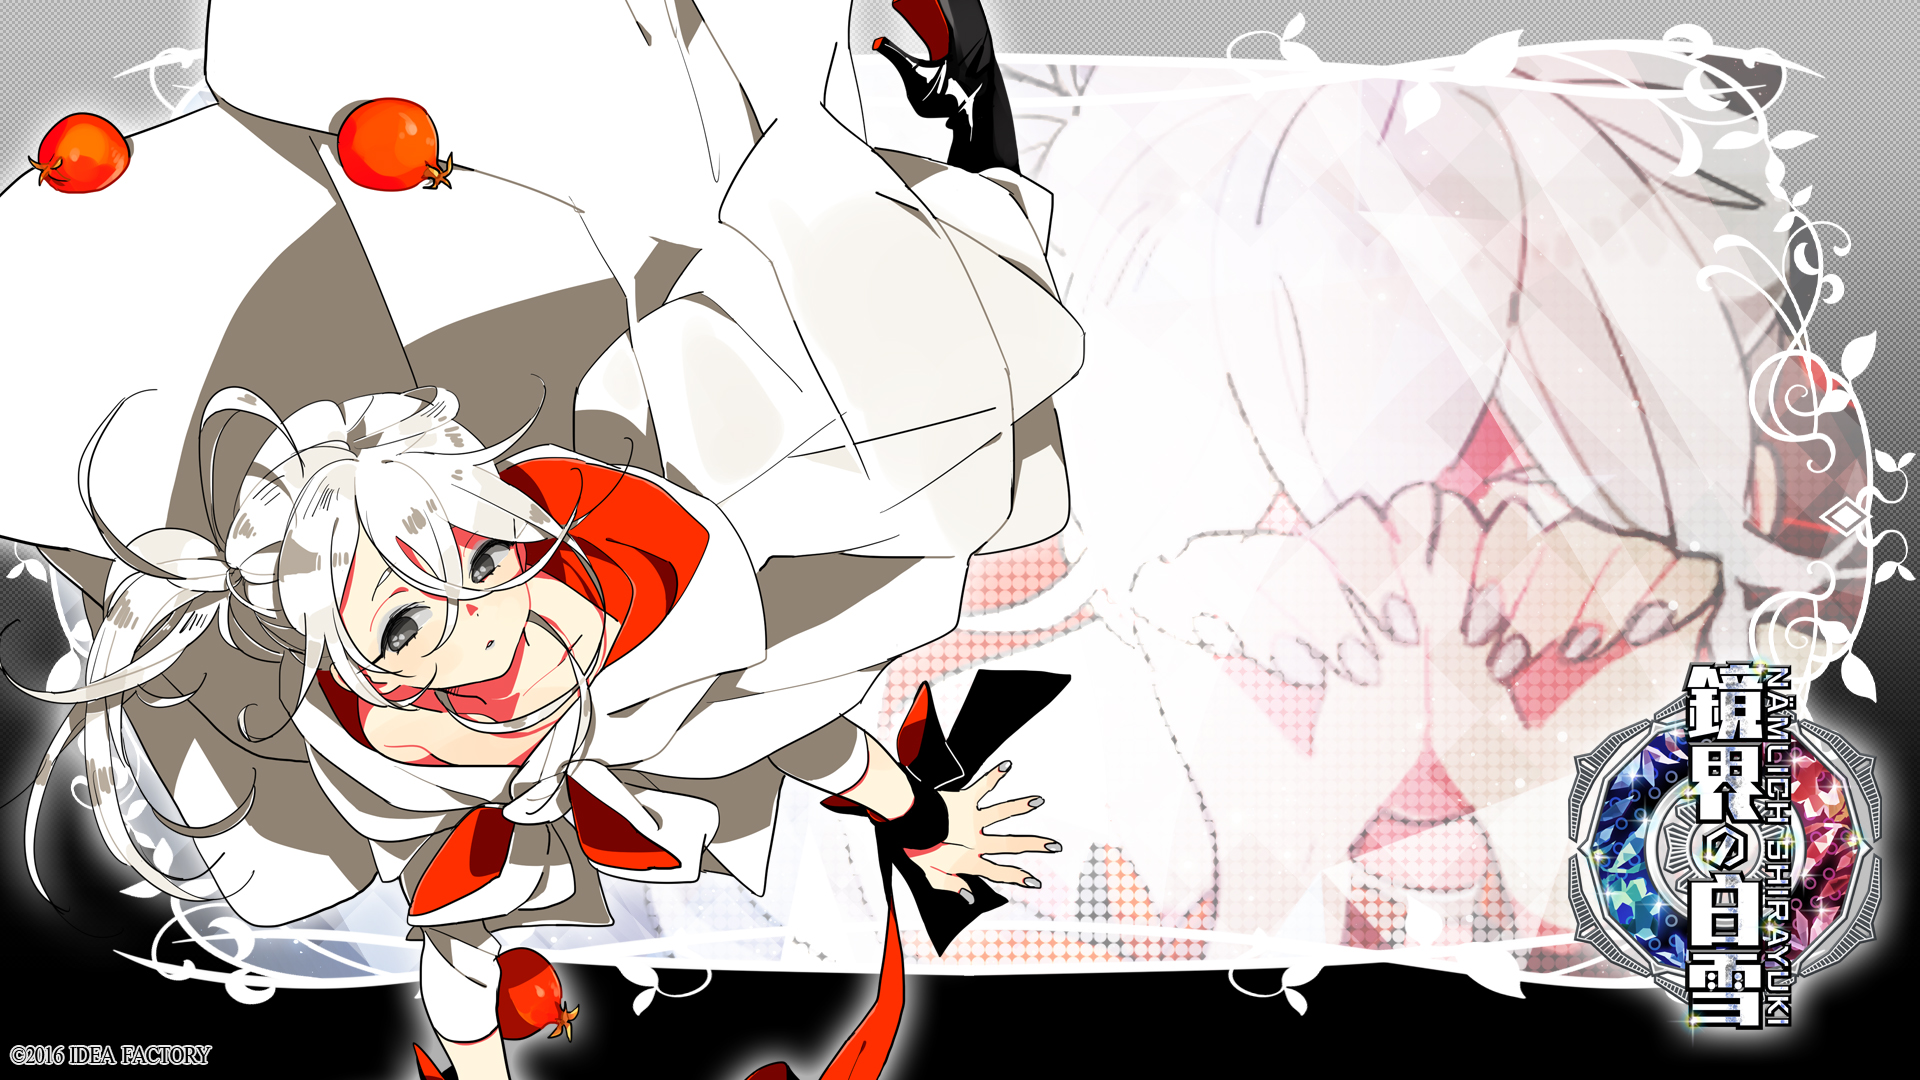 Video Game Kyoukai no Shirayuki HD Wallpaper | Background Image